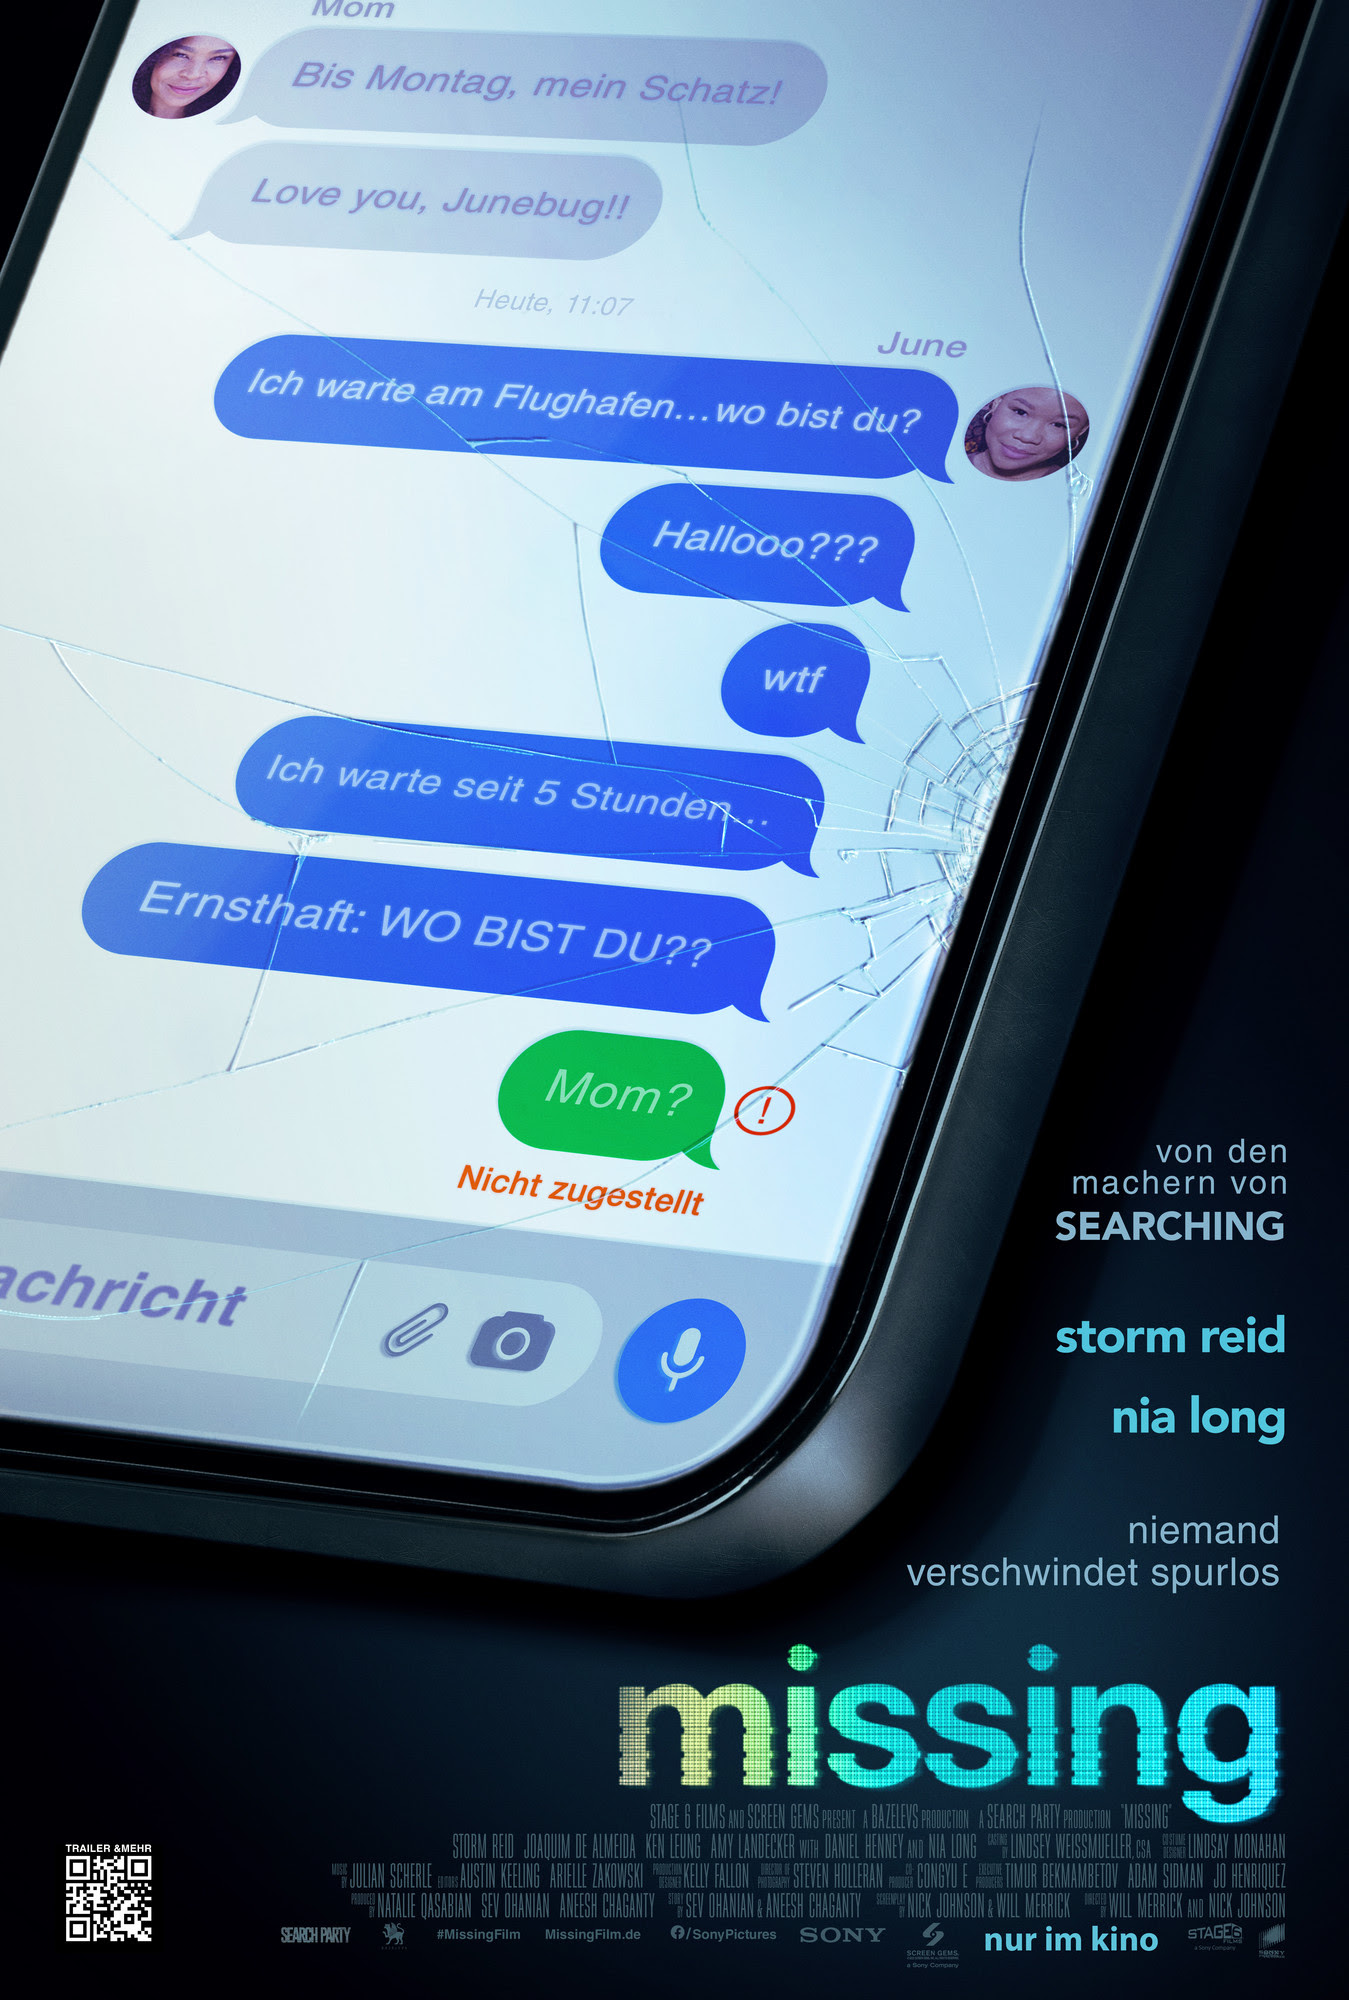 MISSING - Filmposter zeigt Chatverlauf am Smartphone